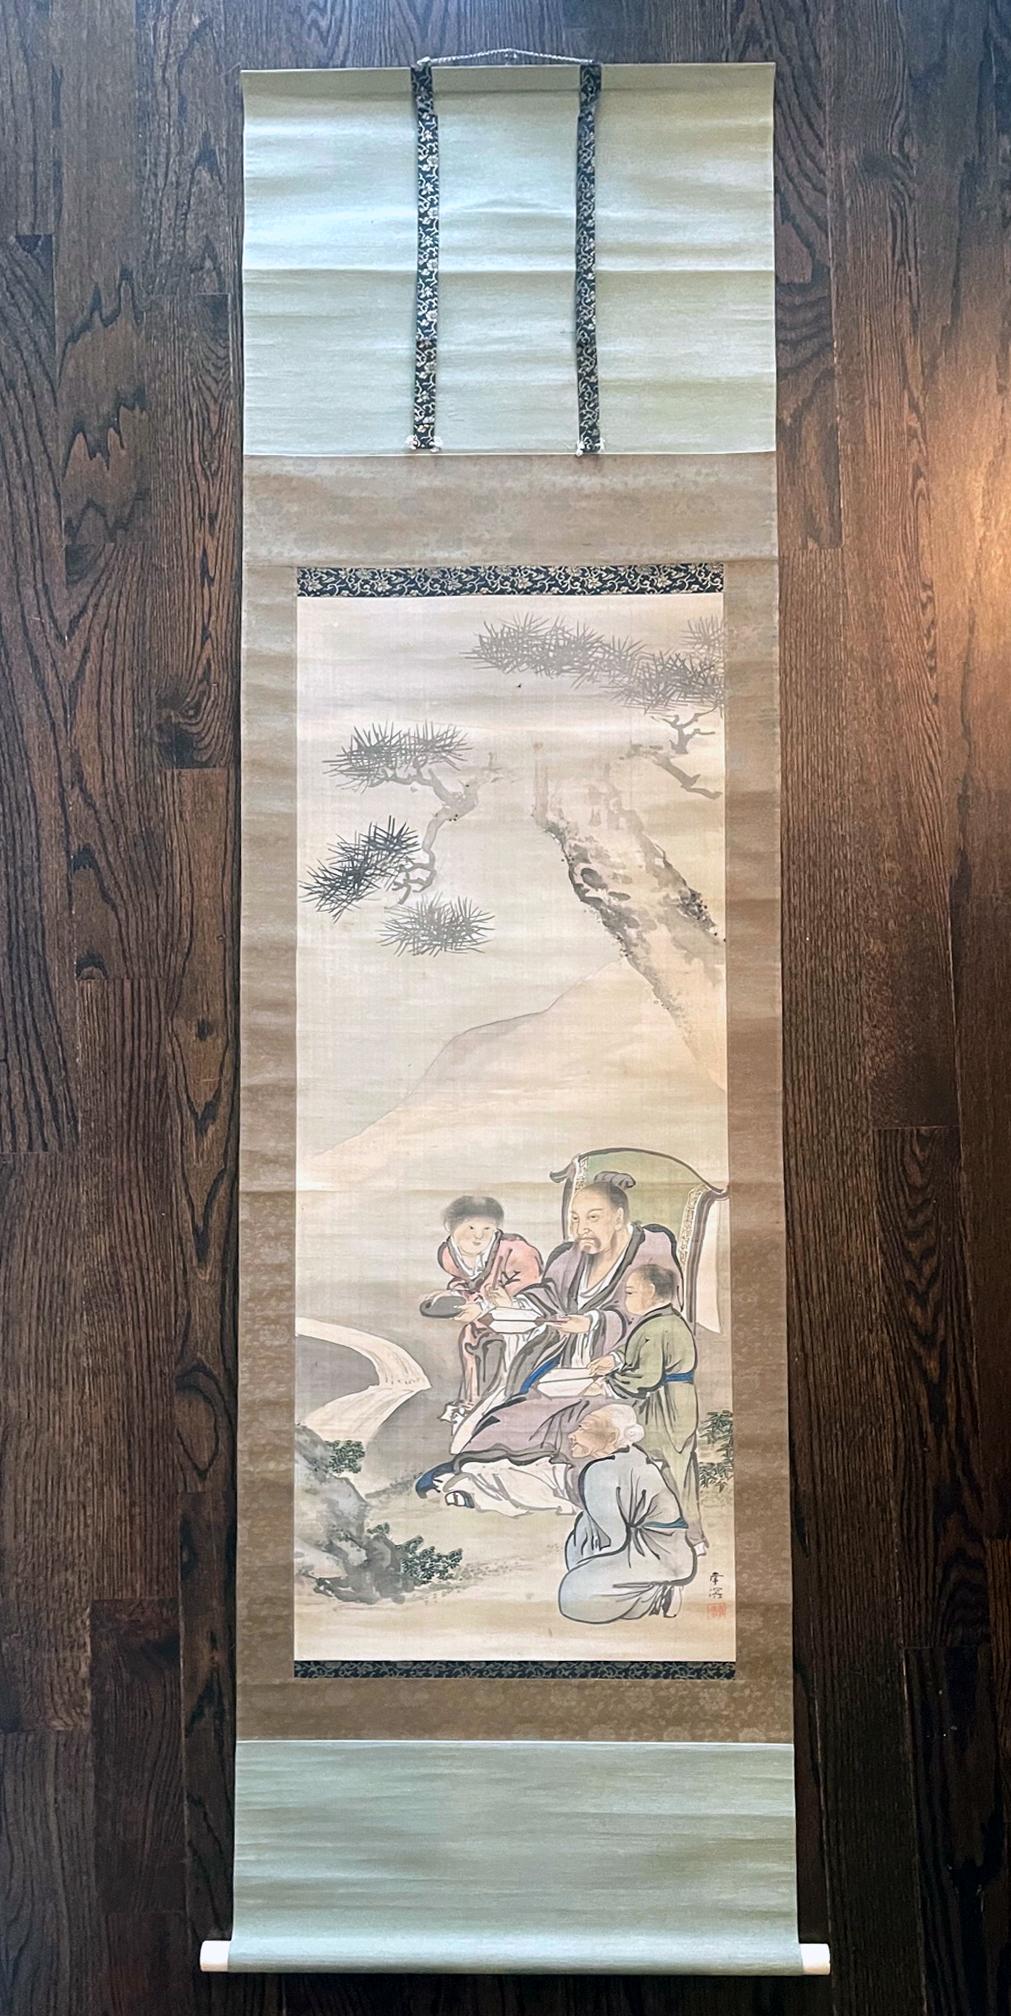 Rouleau de soie japonais suspendu par le peintre Haruki Nanmei (1795-1878) de la fin de la période Edo. Cette peinture à la gouache s'inscrit dans la tradition de l'école de Kano et représente un vieil érudit vêtu d'une longue robe fluide, assis sur